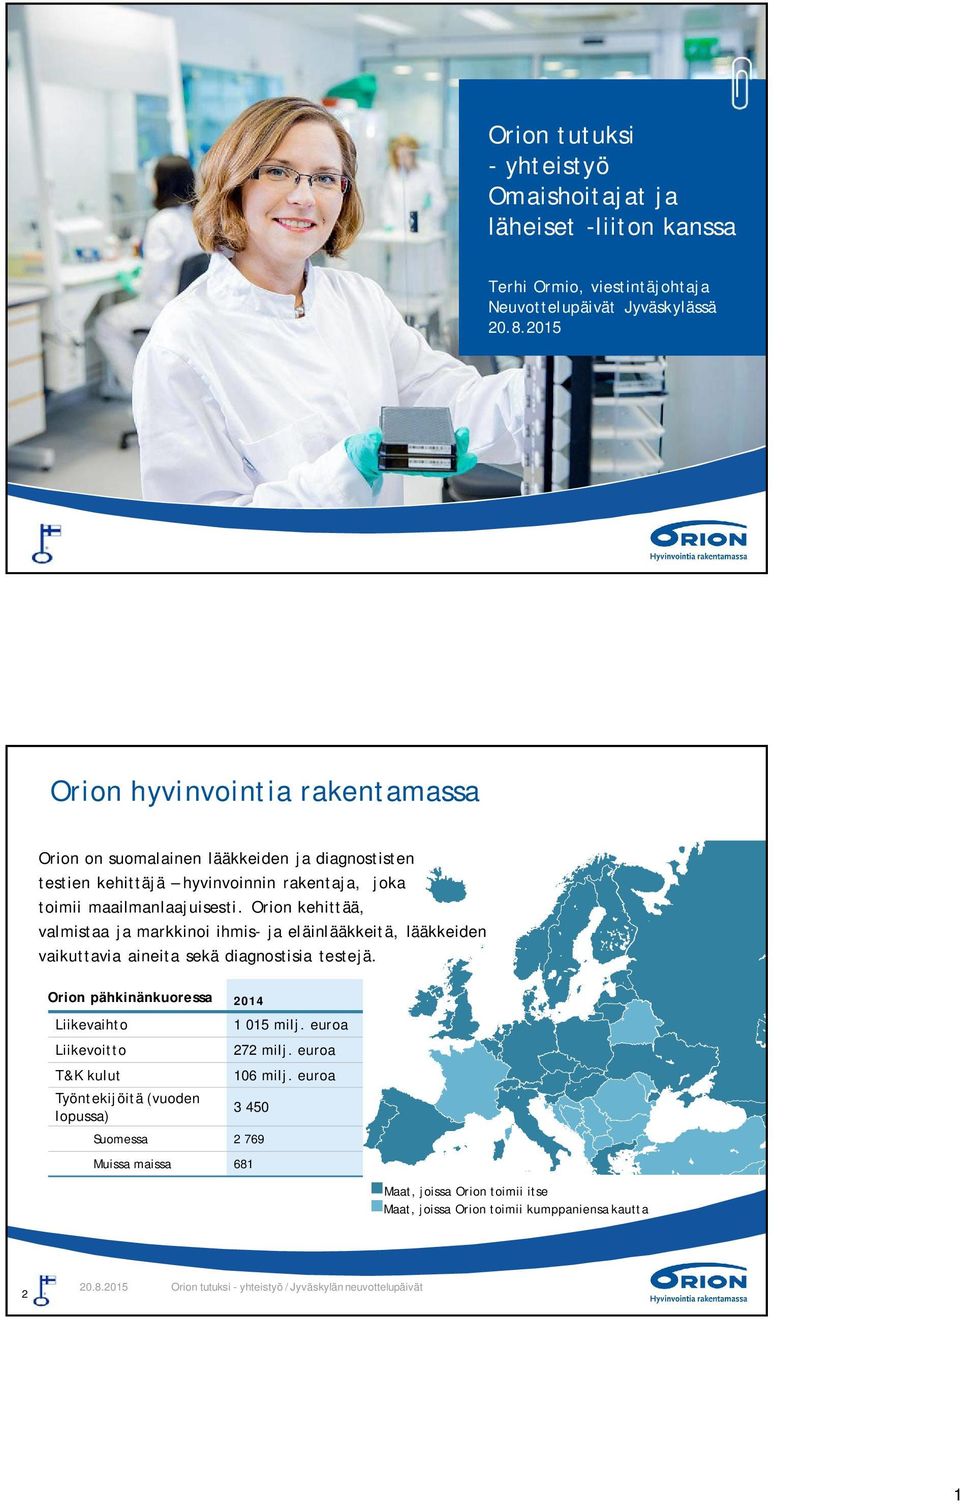 Orion kehittää, valmistaa ja markkinoi ihmis- ja eläinlääkkeitä, lääkkeiden vaikuttavia aineita sekä diagnostisia testejä.